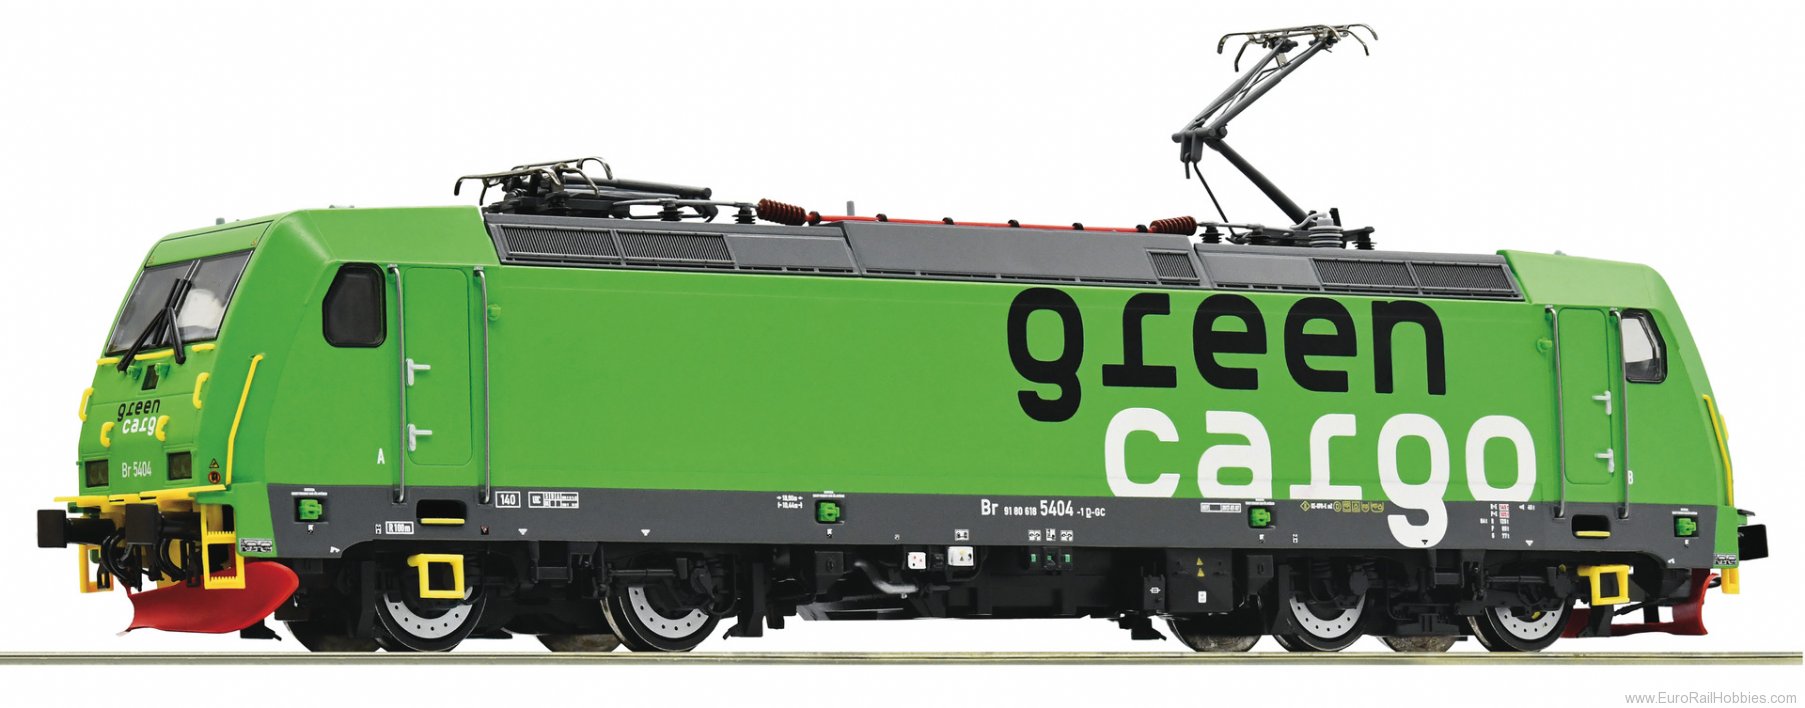 Roco 73179 Electric locomotive Br 5404, Green Cargo DCC 